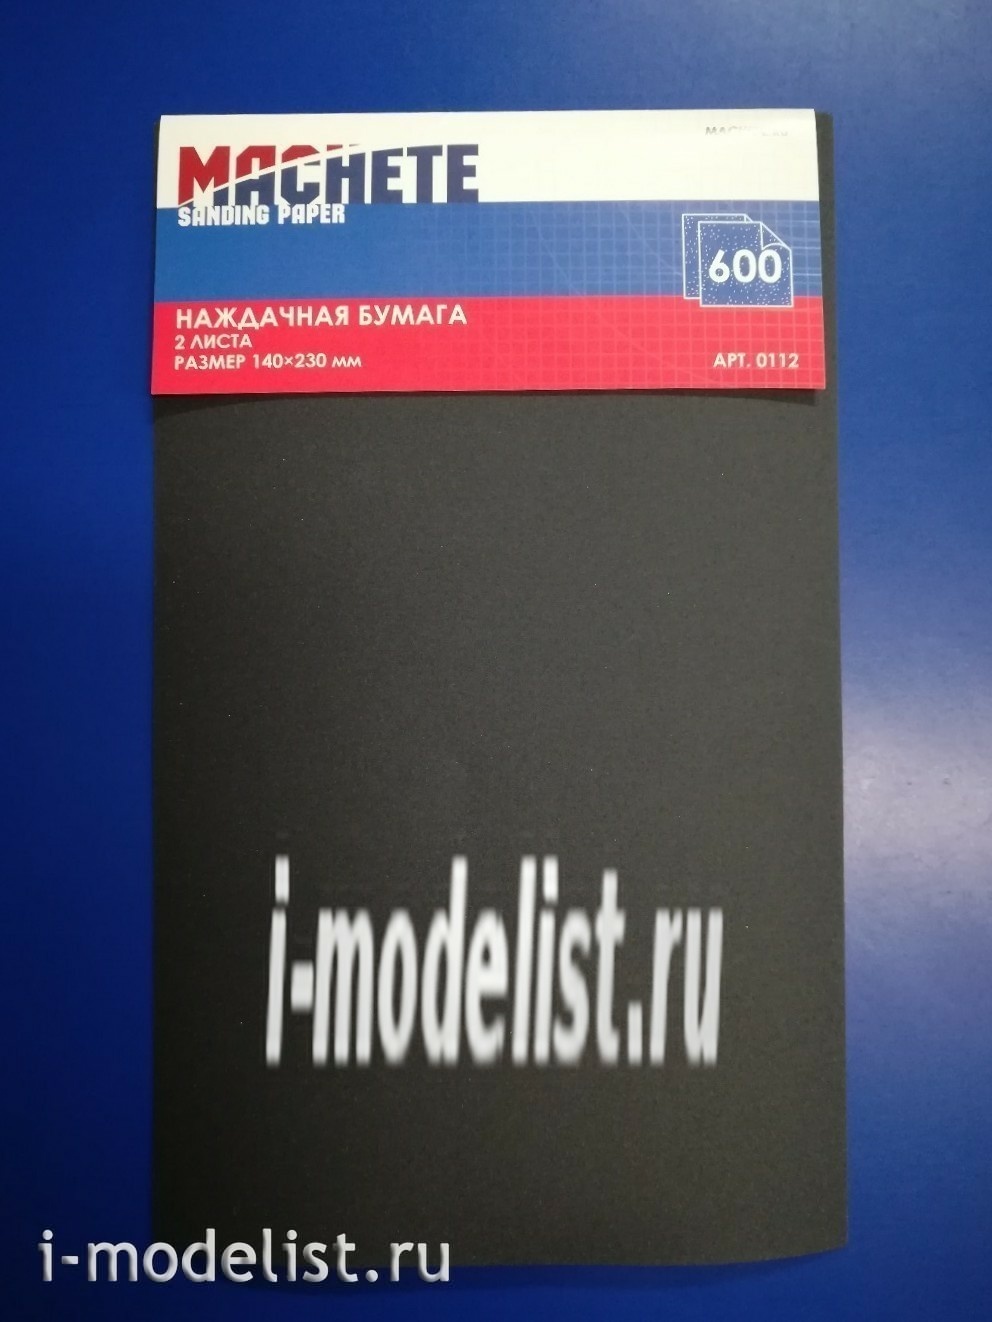 0112 MACHETE sandpaper 600 (2 sheets)